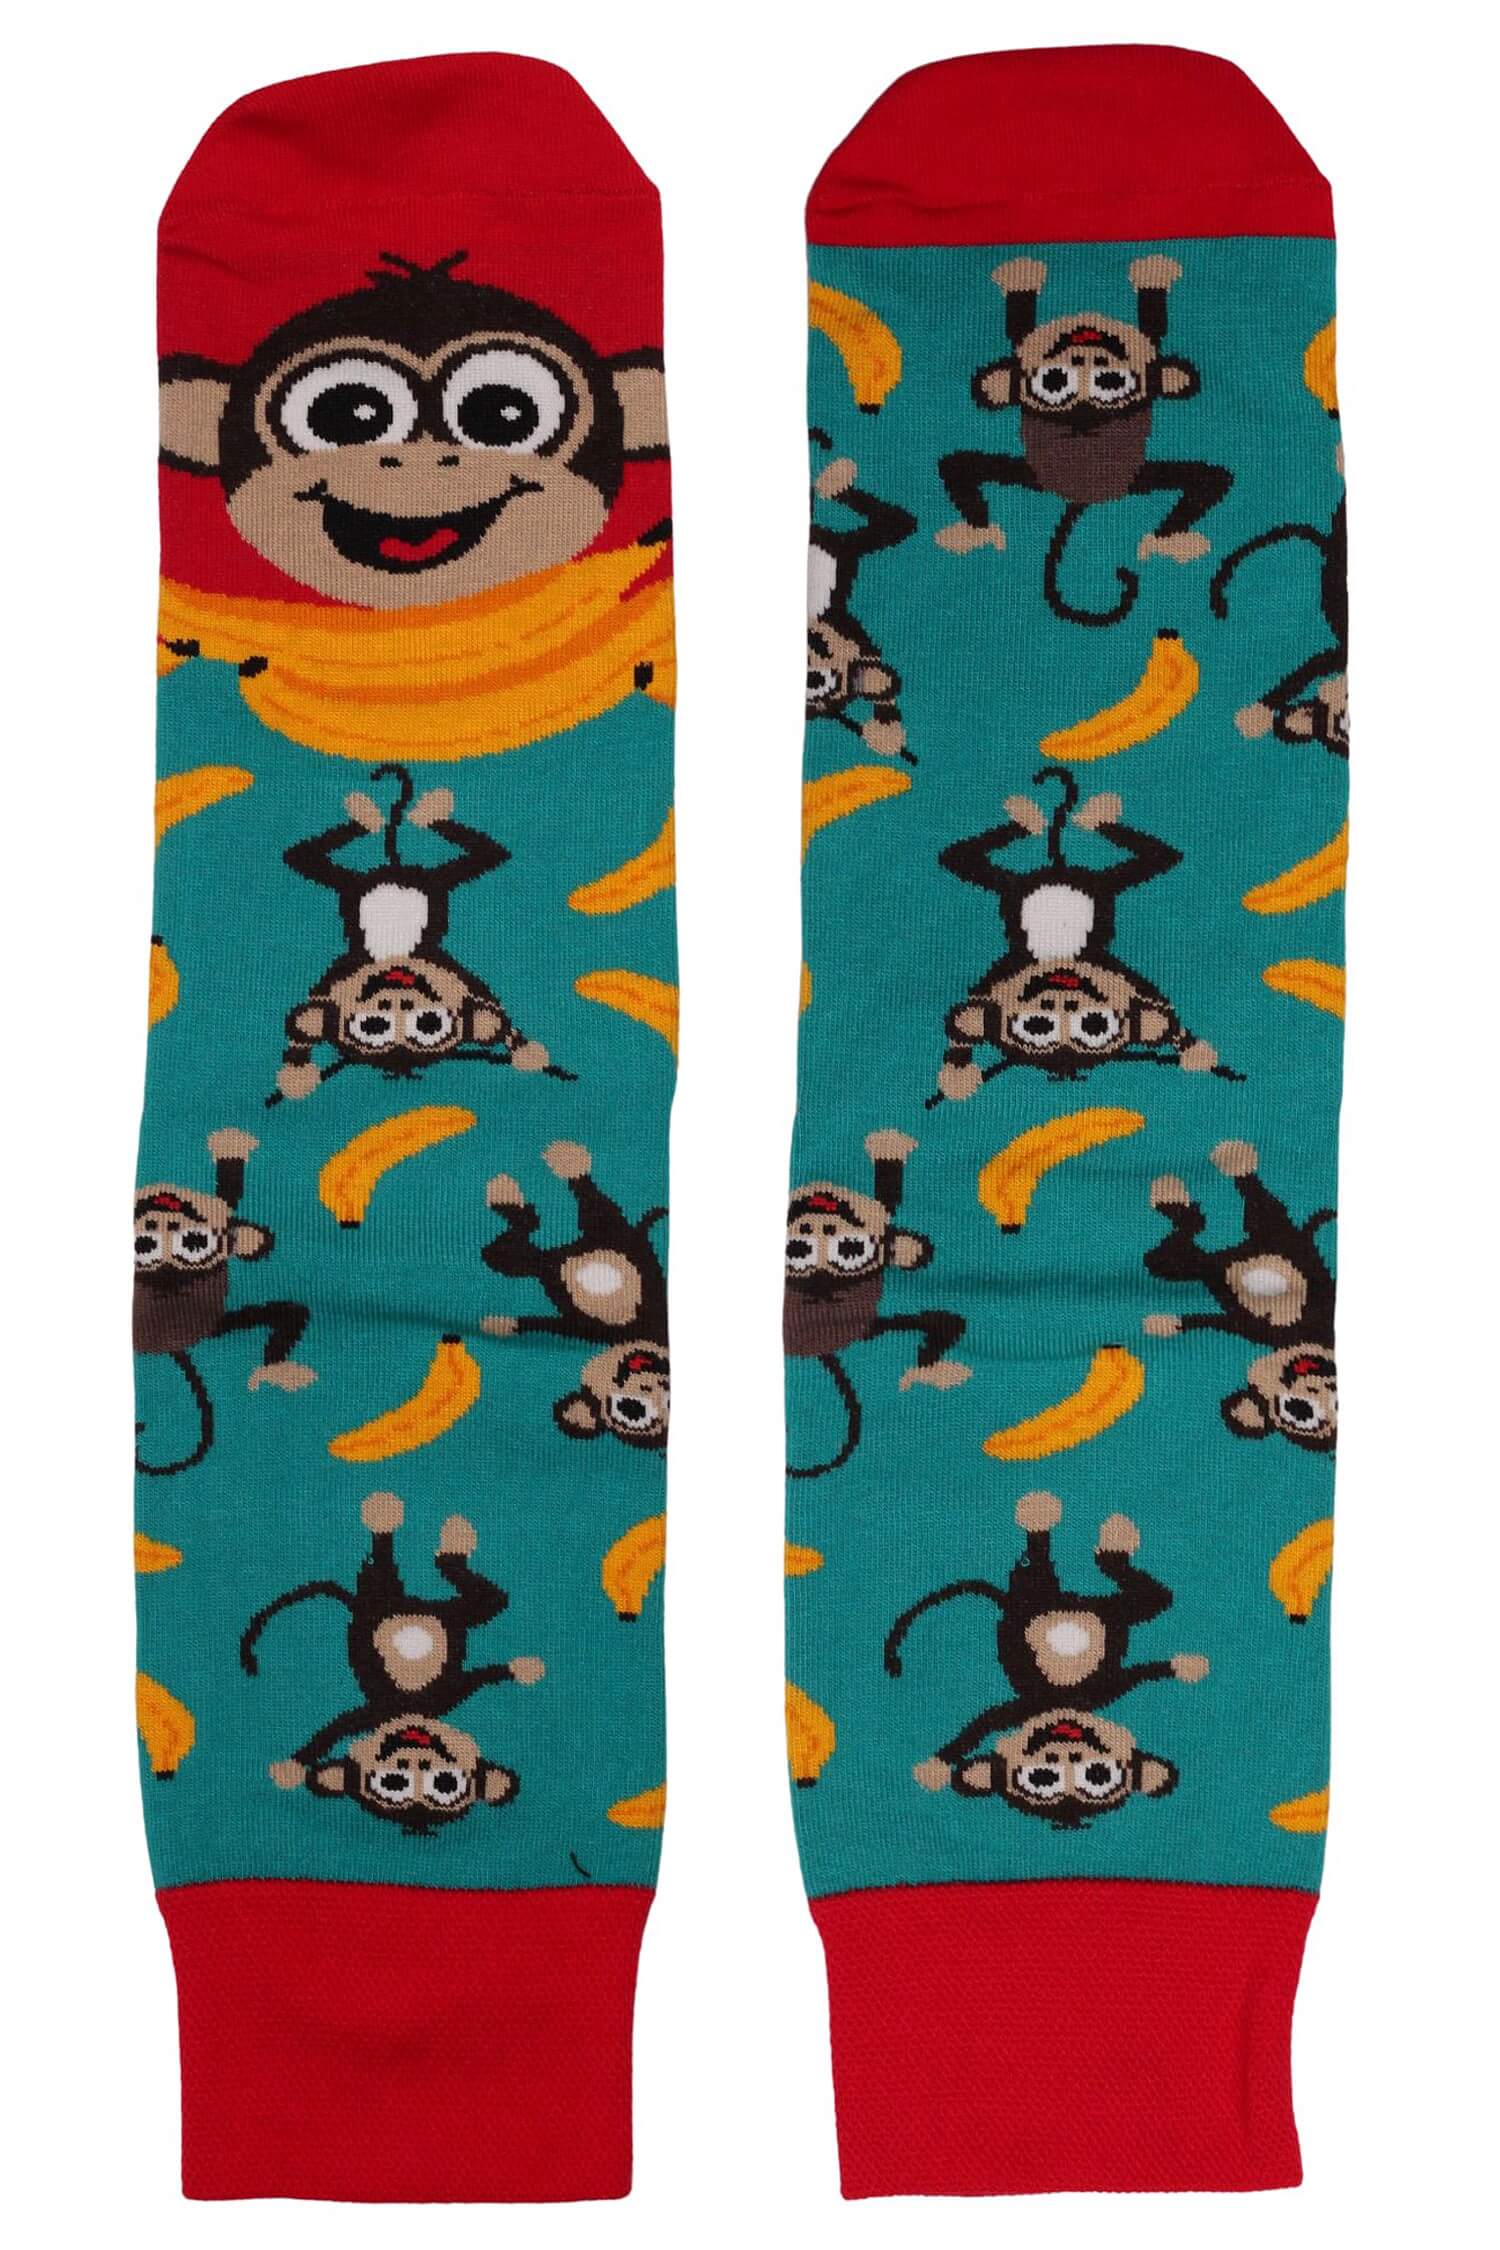 Veselé ponožky každá jiná - opička 1979 41-43 petrolejová